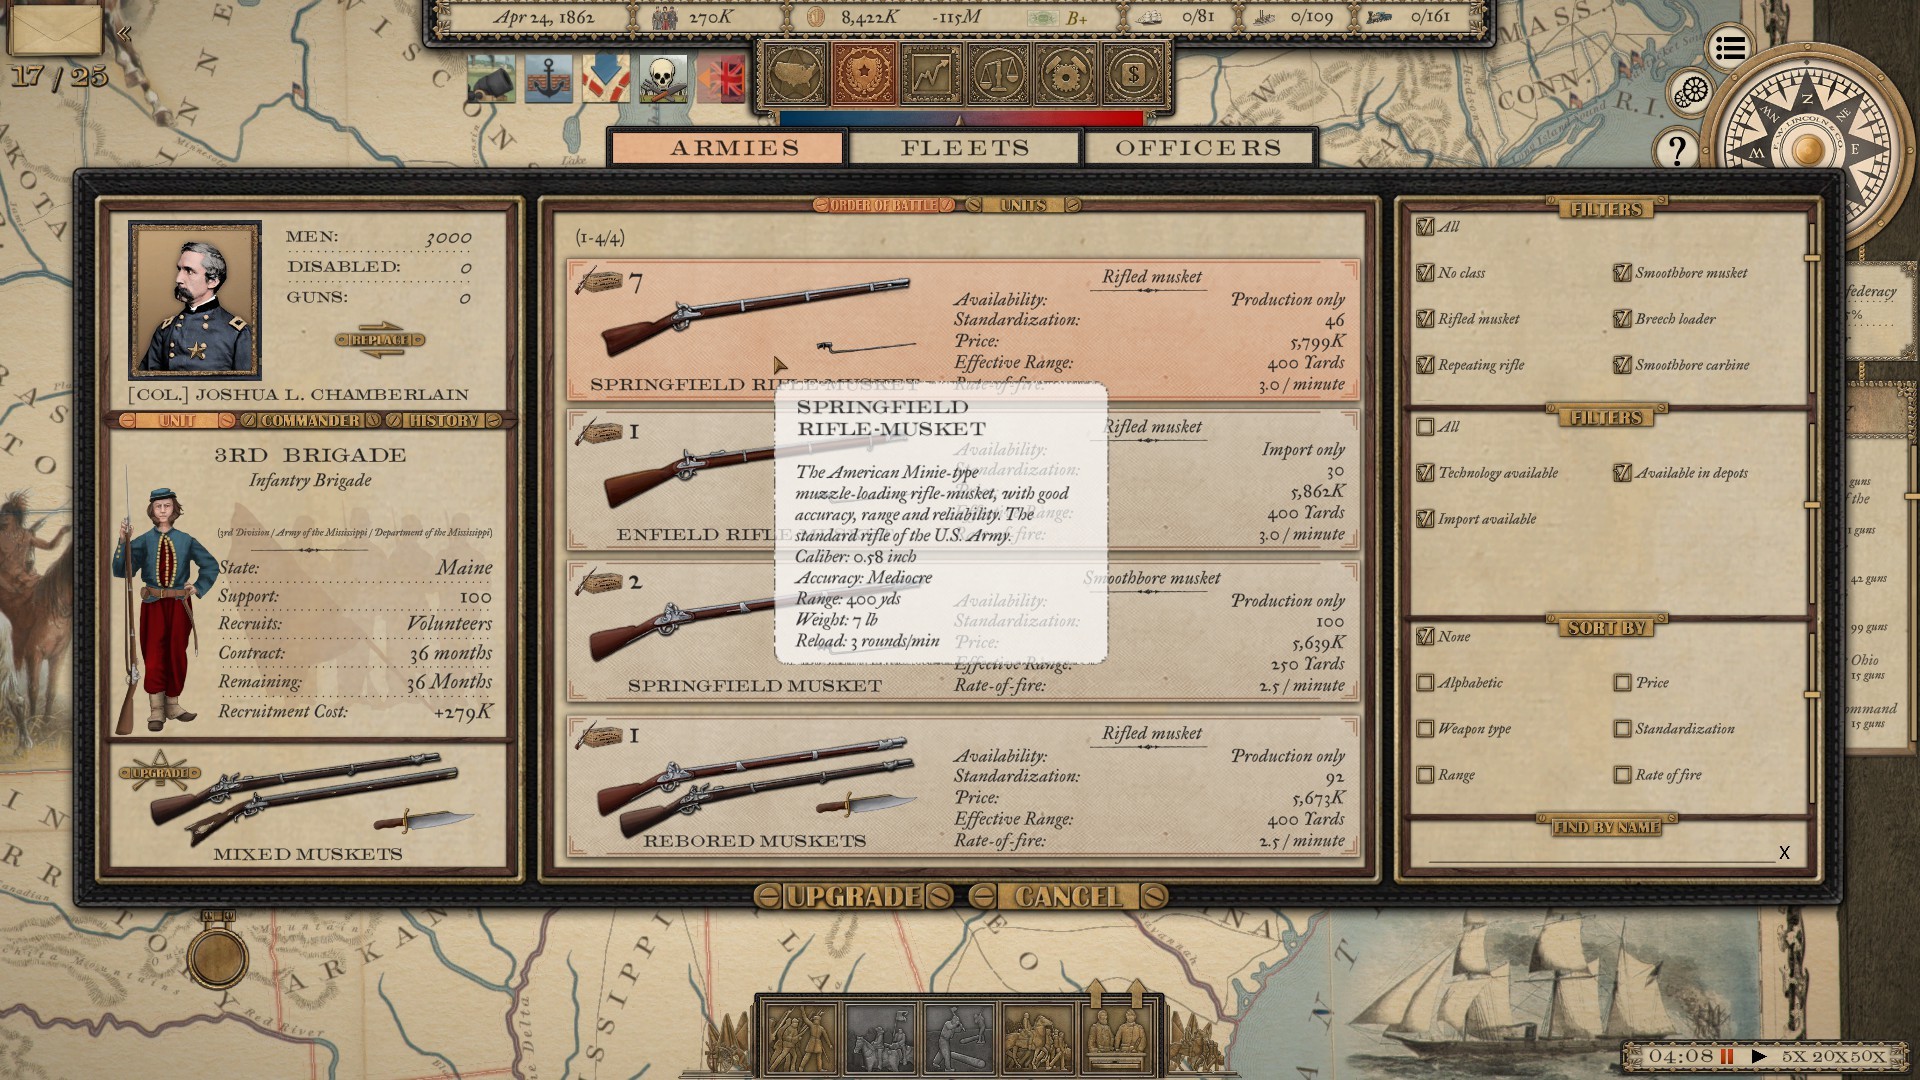 Grand Tactician: The Civil War (1861-1865) - screenshot 21